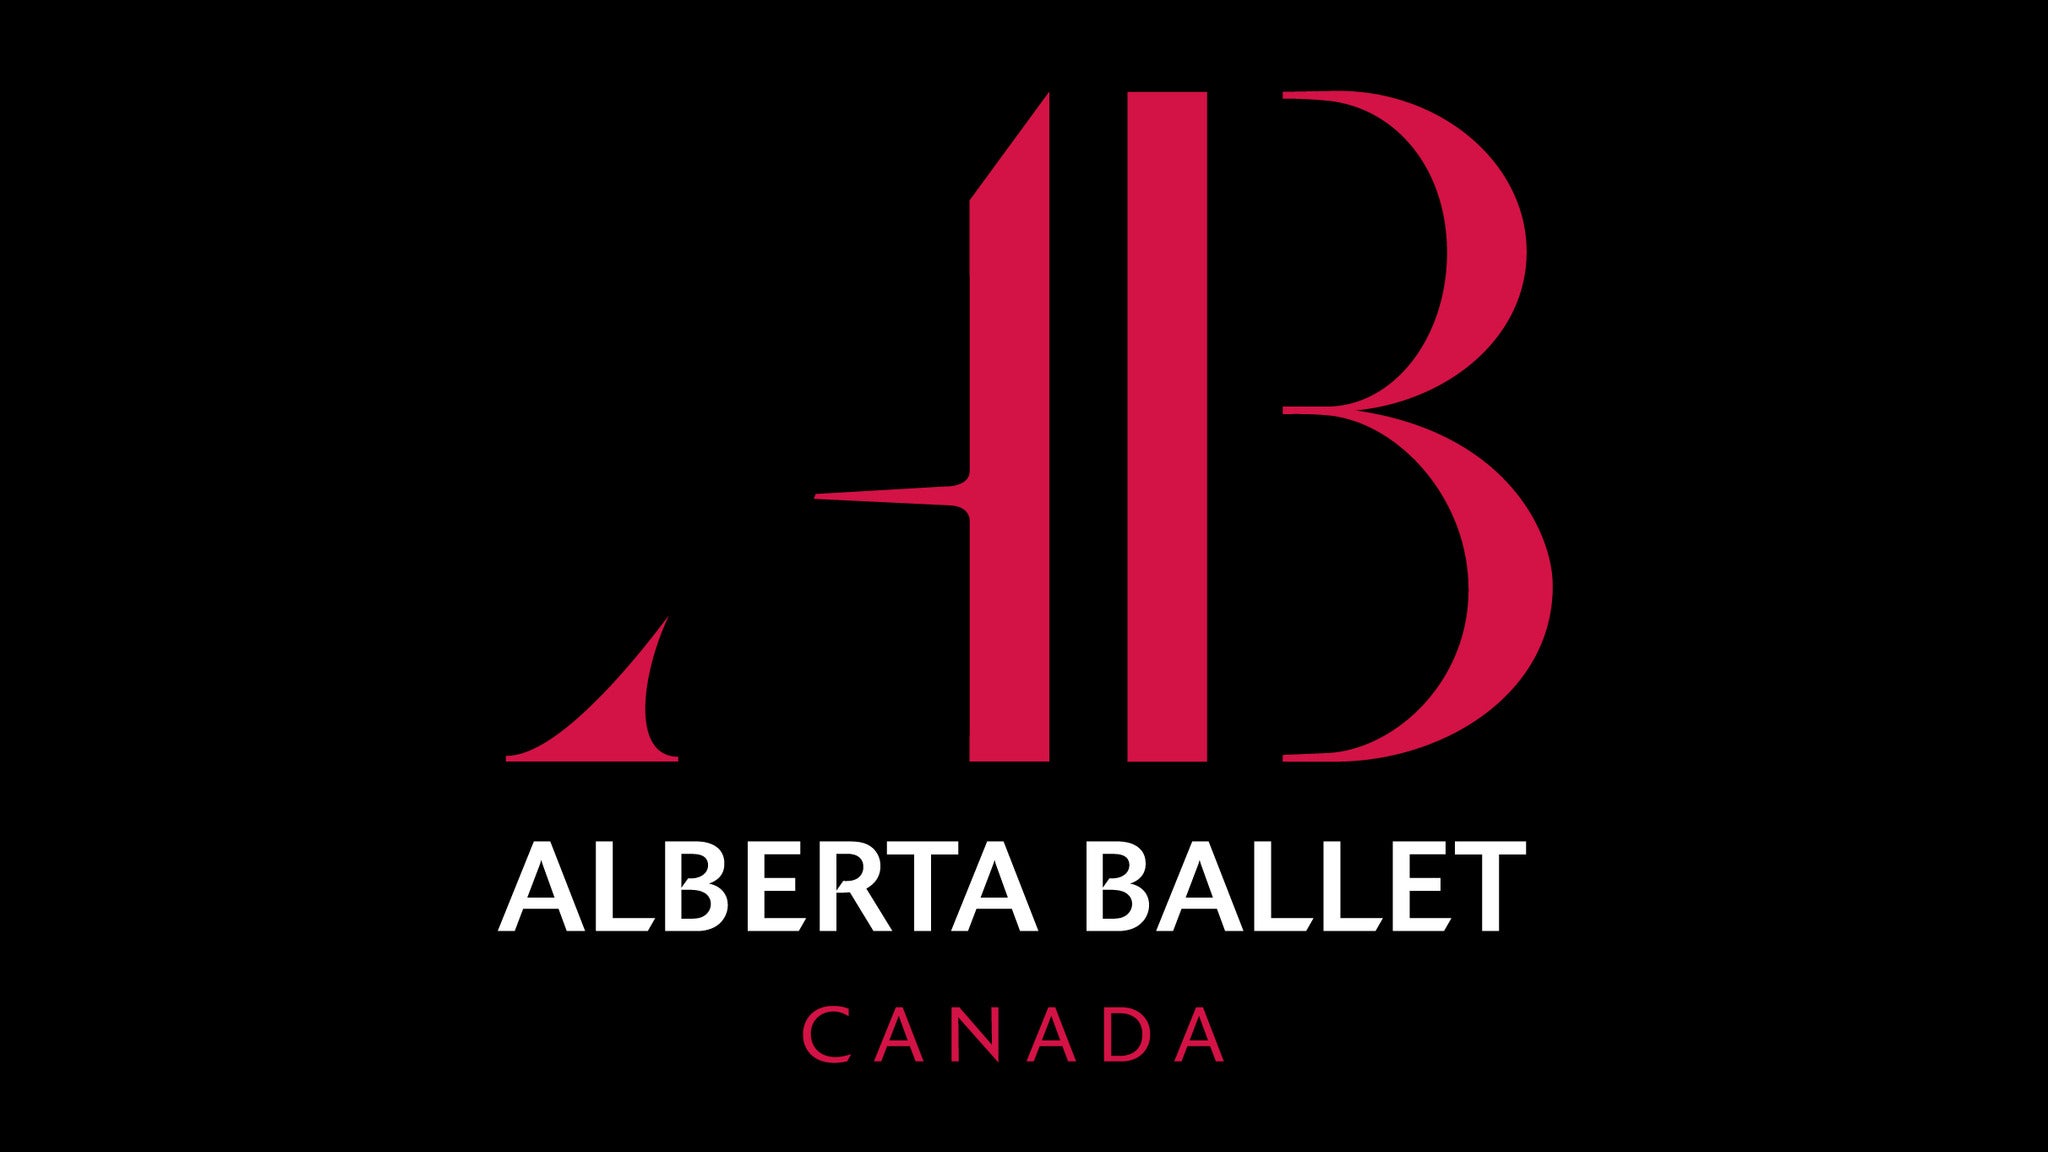 Alberta Ballet Welcomes Beijing Dance Theatre in Hamlet